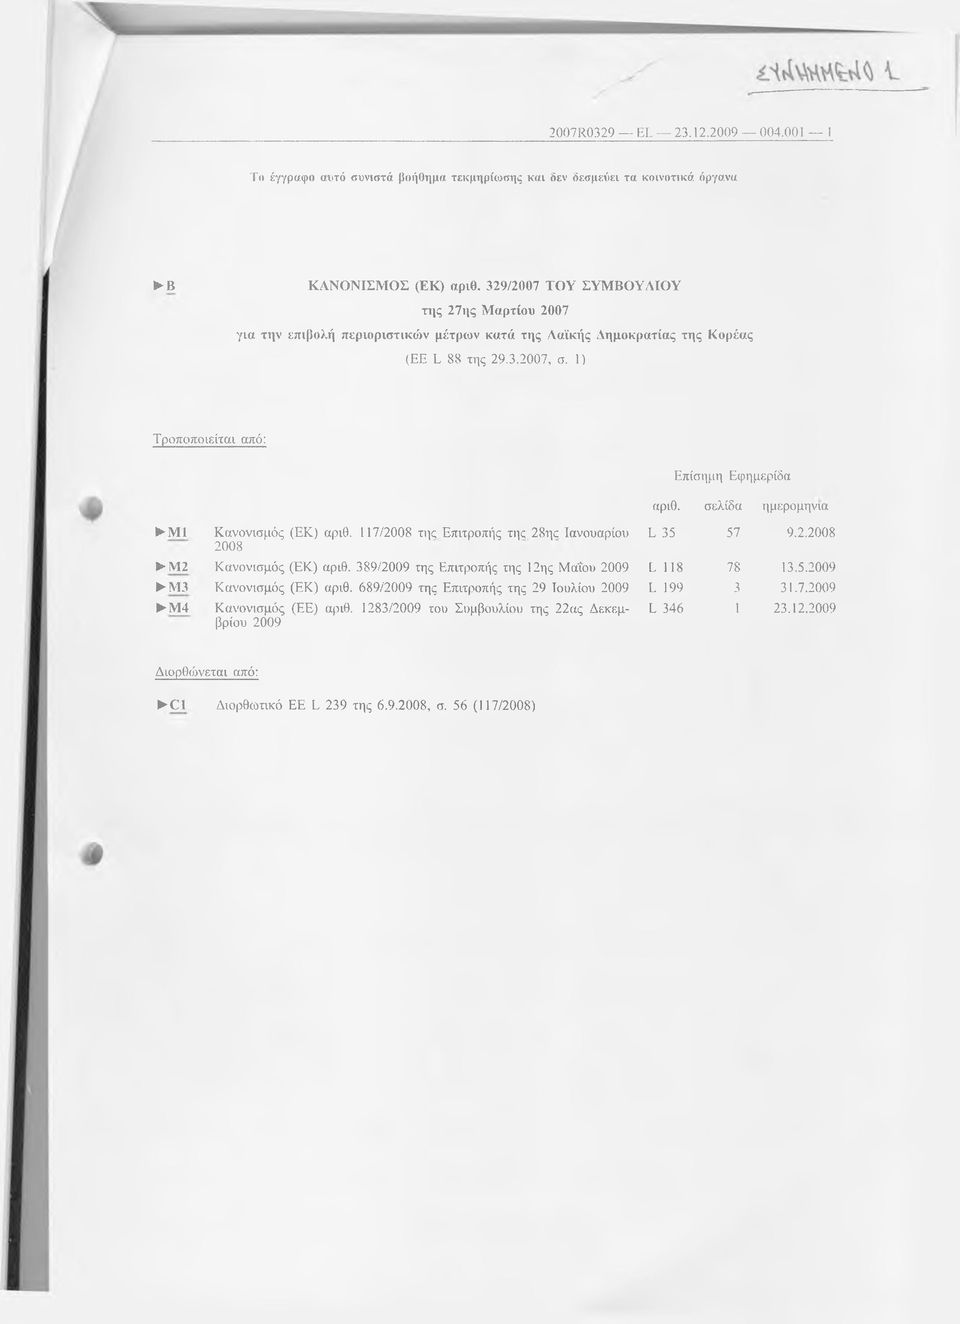 σελίδα ημερομηνία ΜΙ Κανονισμός (ΕΚ) αριθ. 117/2008 της Επιτροπής της 28ης Ιανουαρίου 2008 Μ2 Κανονισμός (ΕΚ) αριθ. 389/2009 της Επιτροπής της 12ης Μαΐου 2009 Μ3 Κανονισμός (ΕΚ) αριθ.